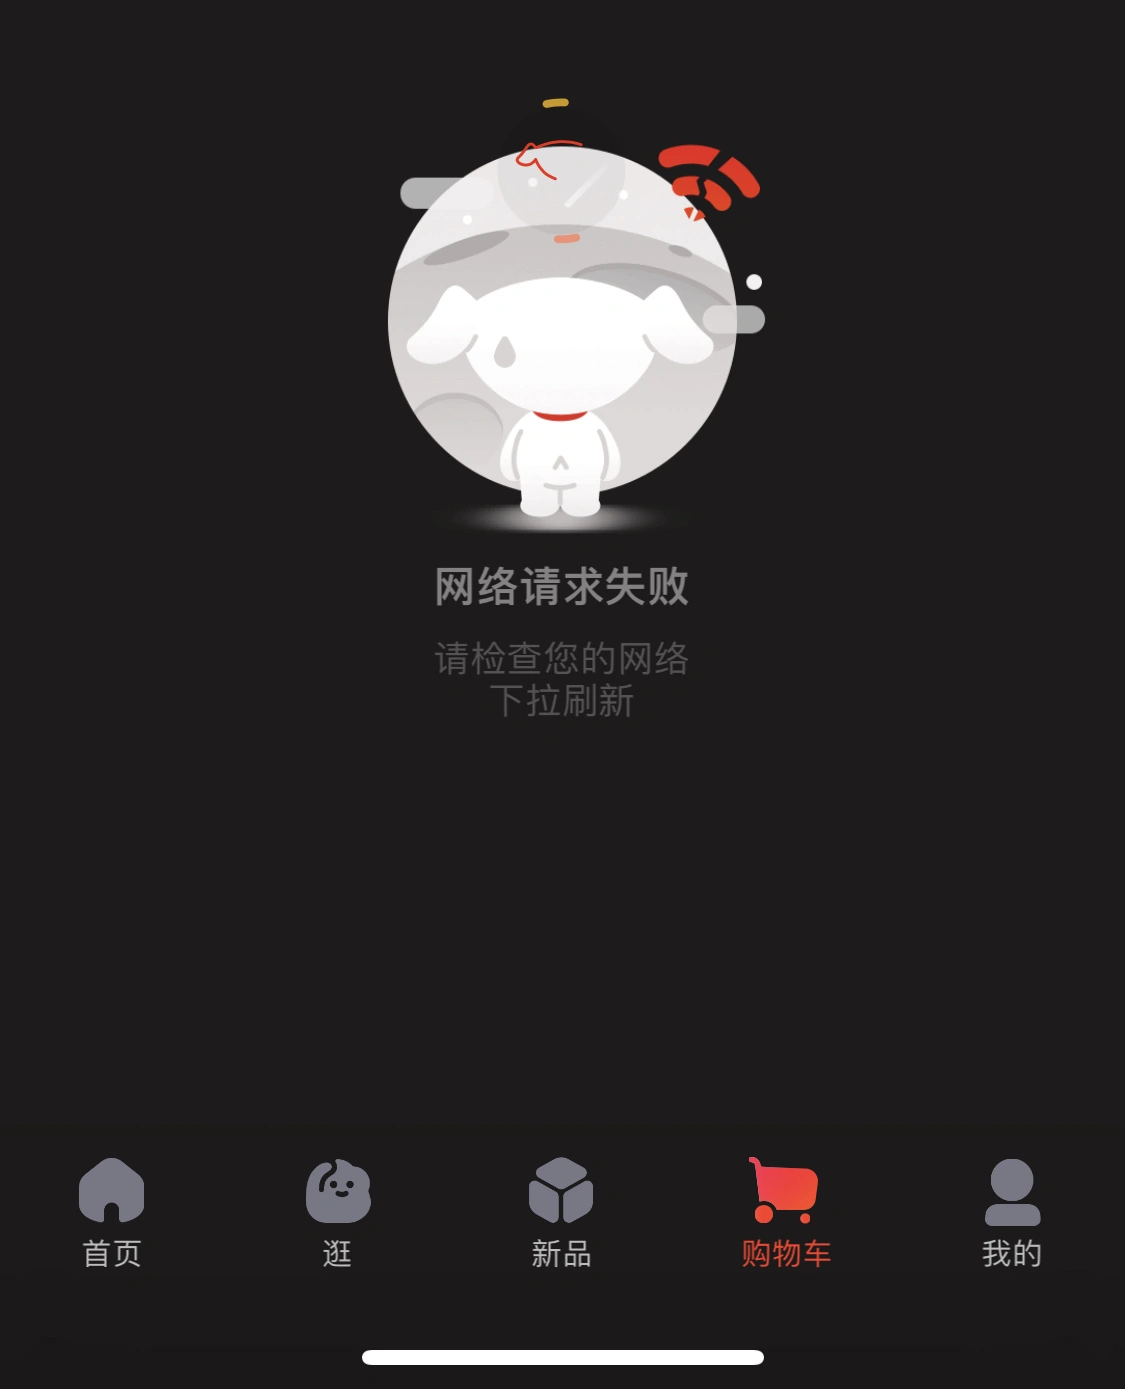 【更新：已恢复正常】京东 App 出现异常，购物车无法加载